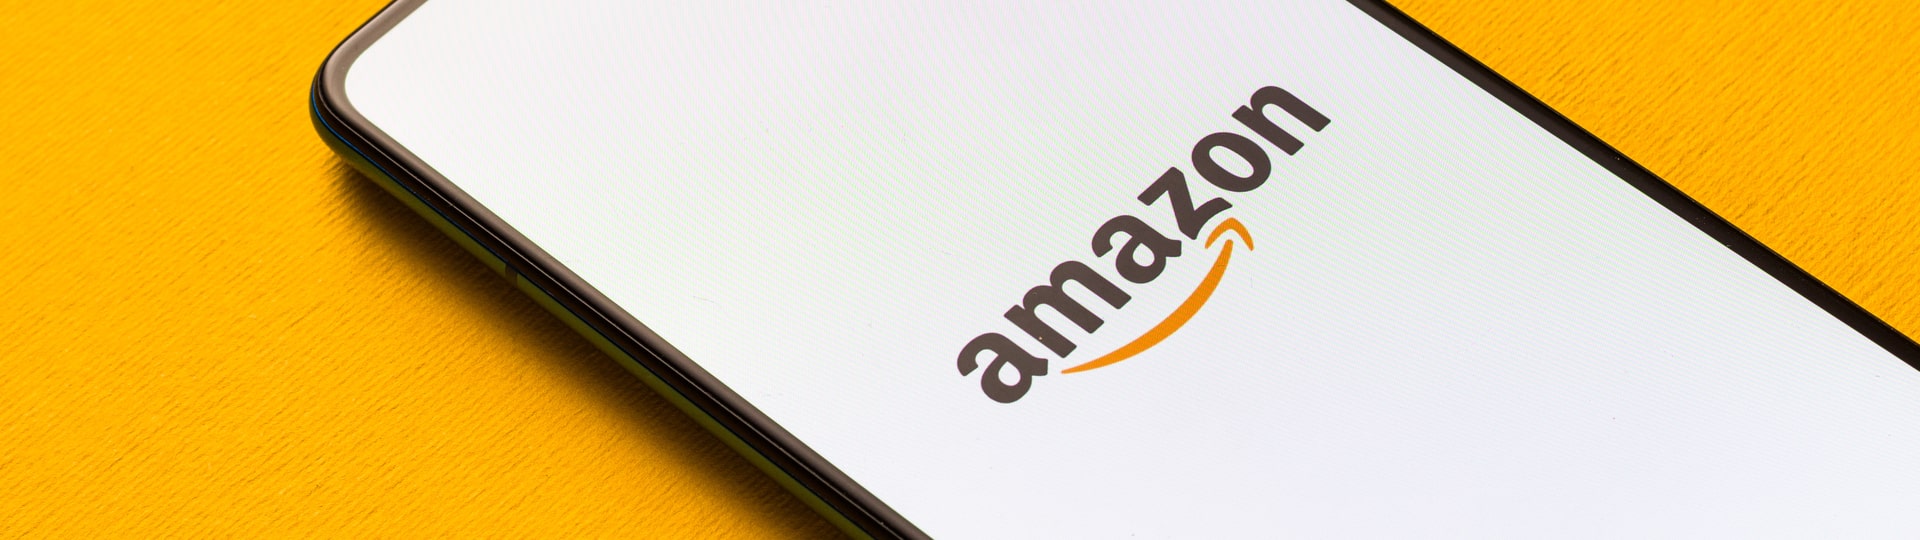 Amazon otevře obchod s módním oblečením, využije moderní technologie